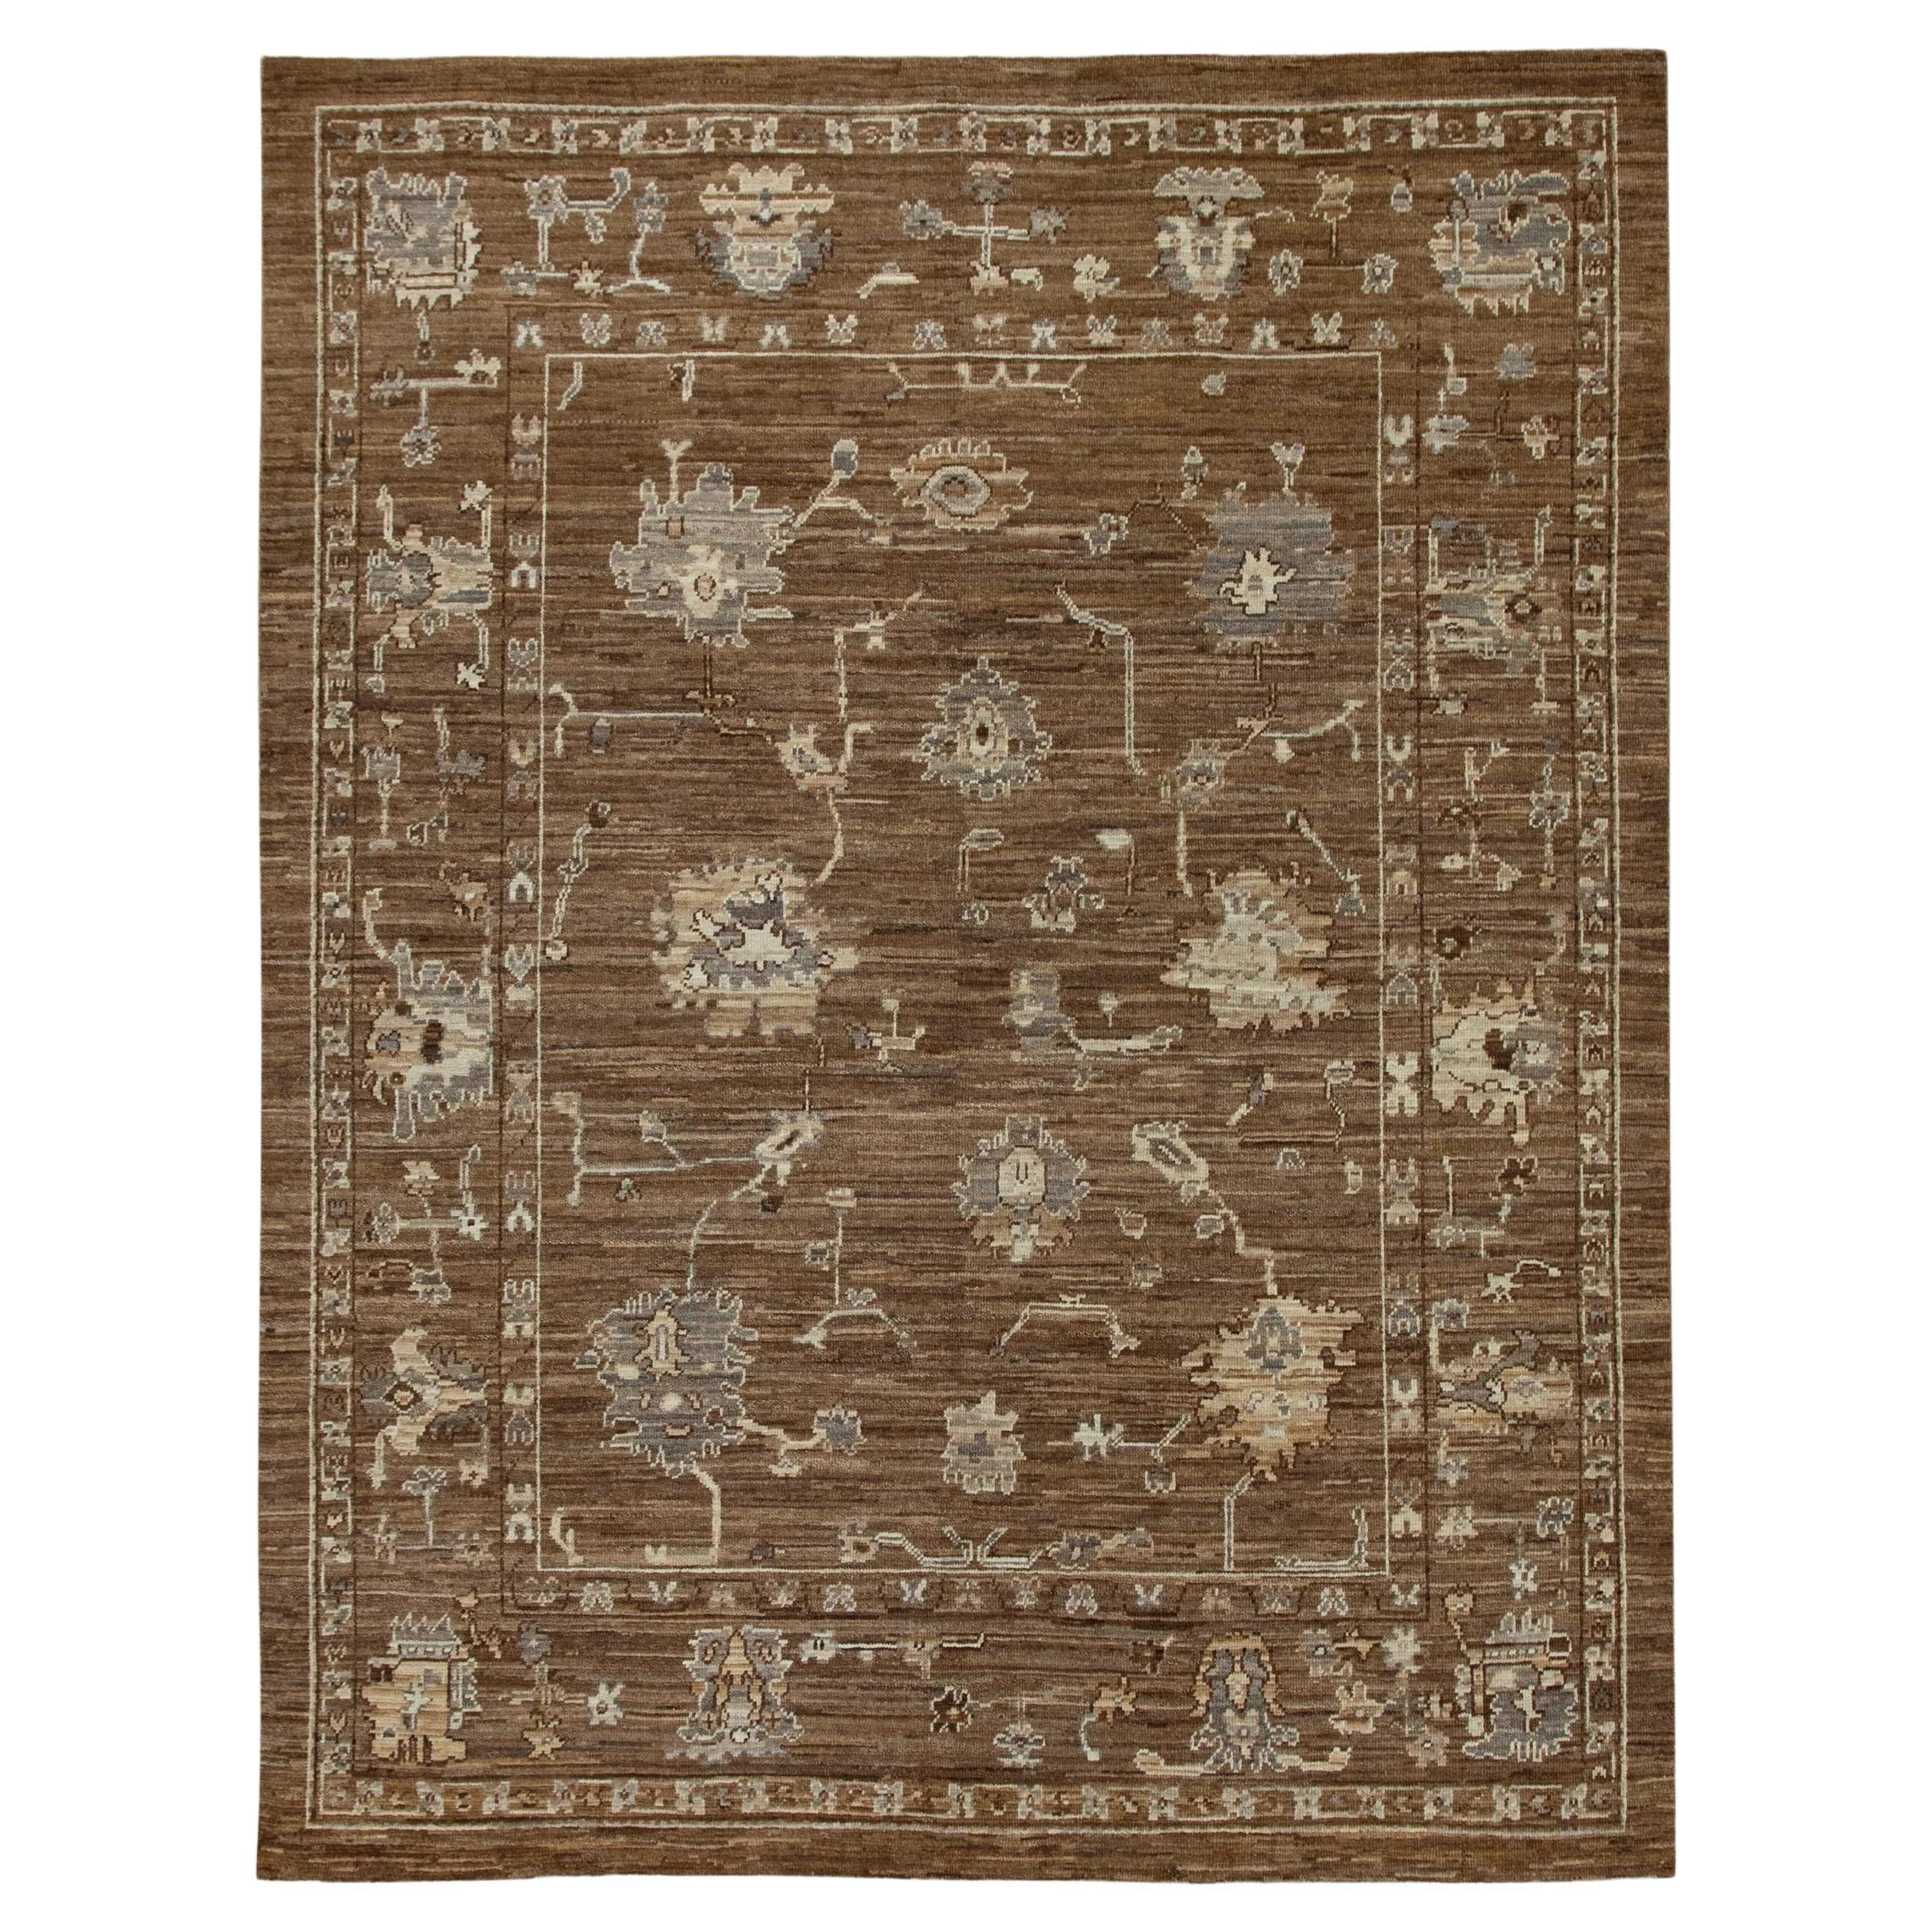 Brauner handgewebter türkischer Oushak-Teppich aus Wolle mit Blumenmuster 7'11" x 10'2"